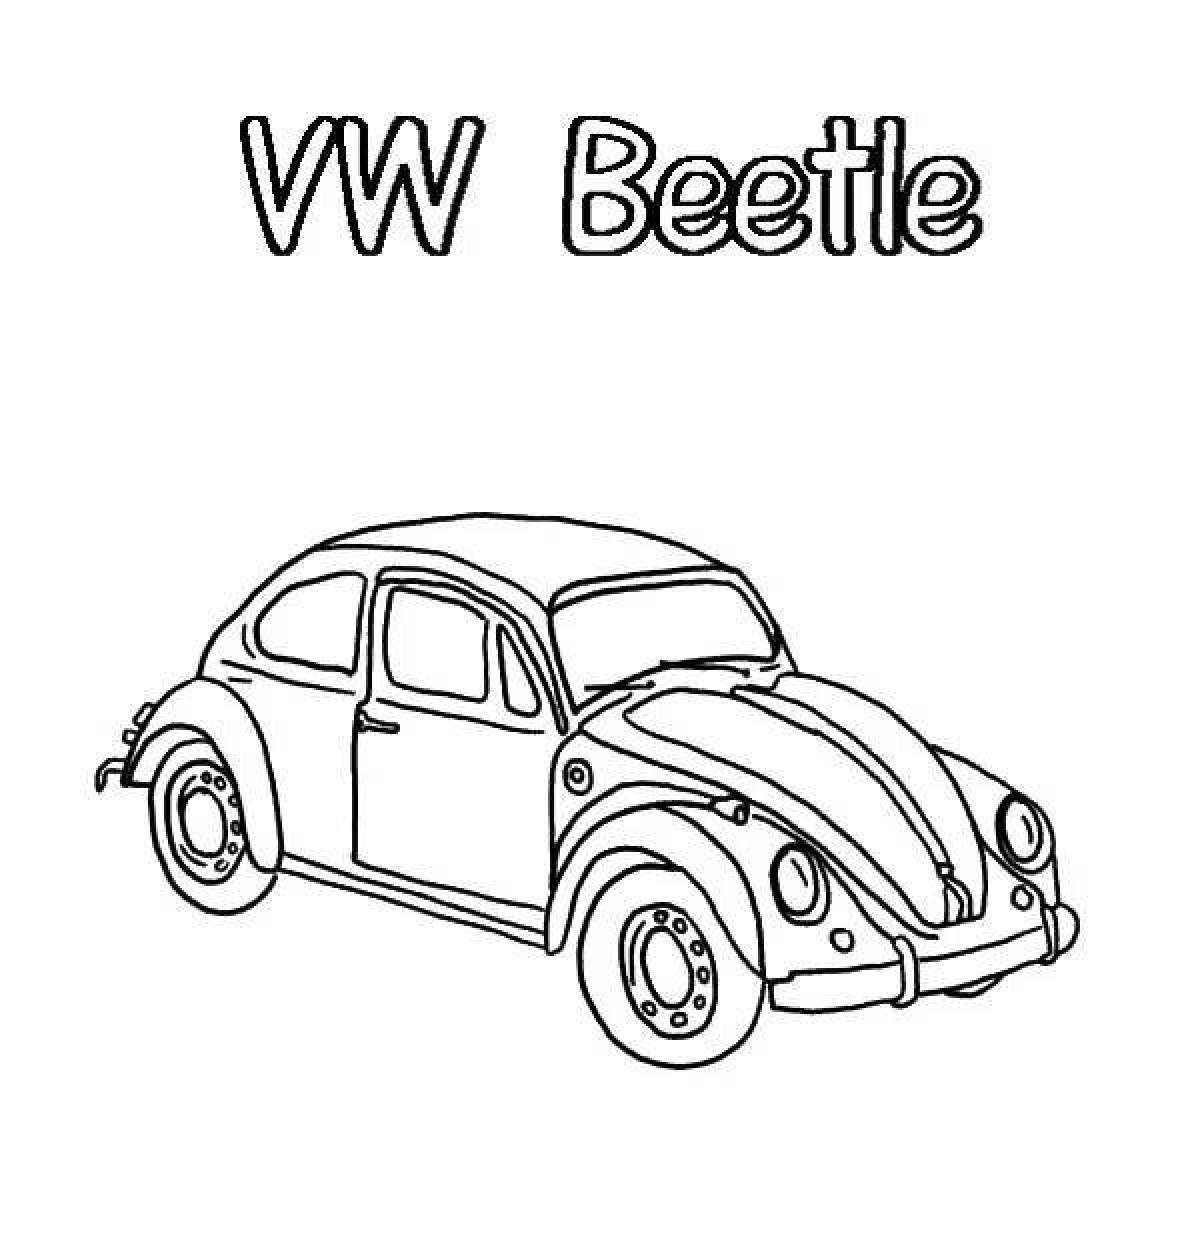 Volkswagen beetle livery